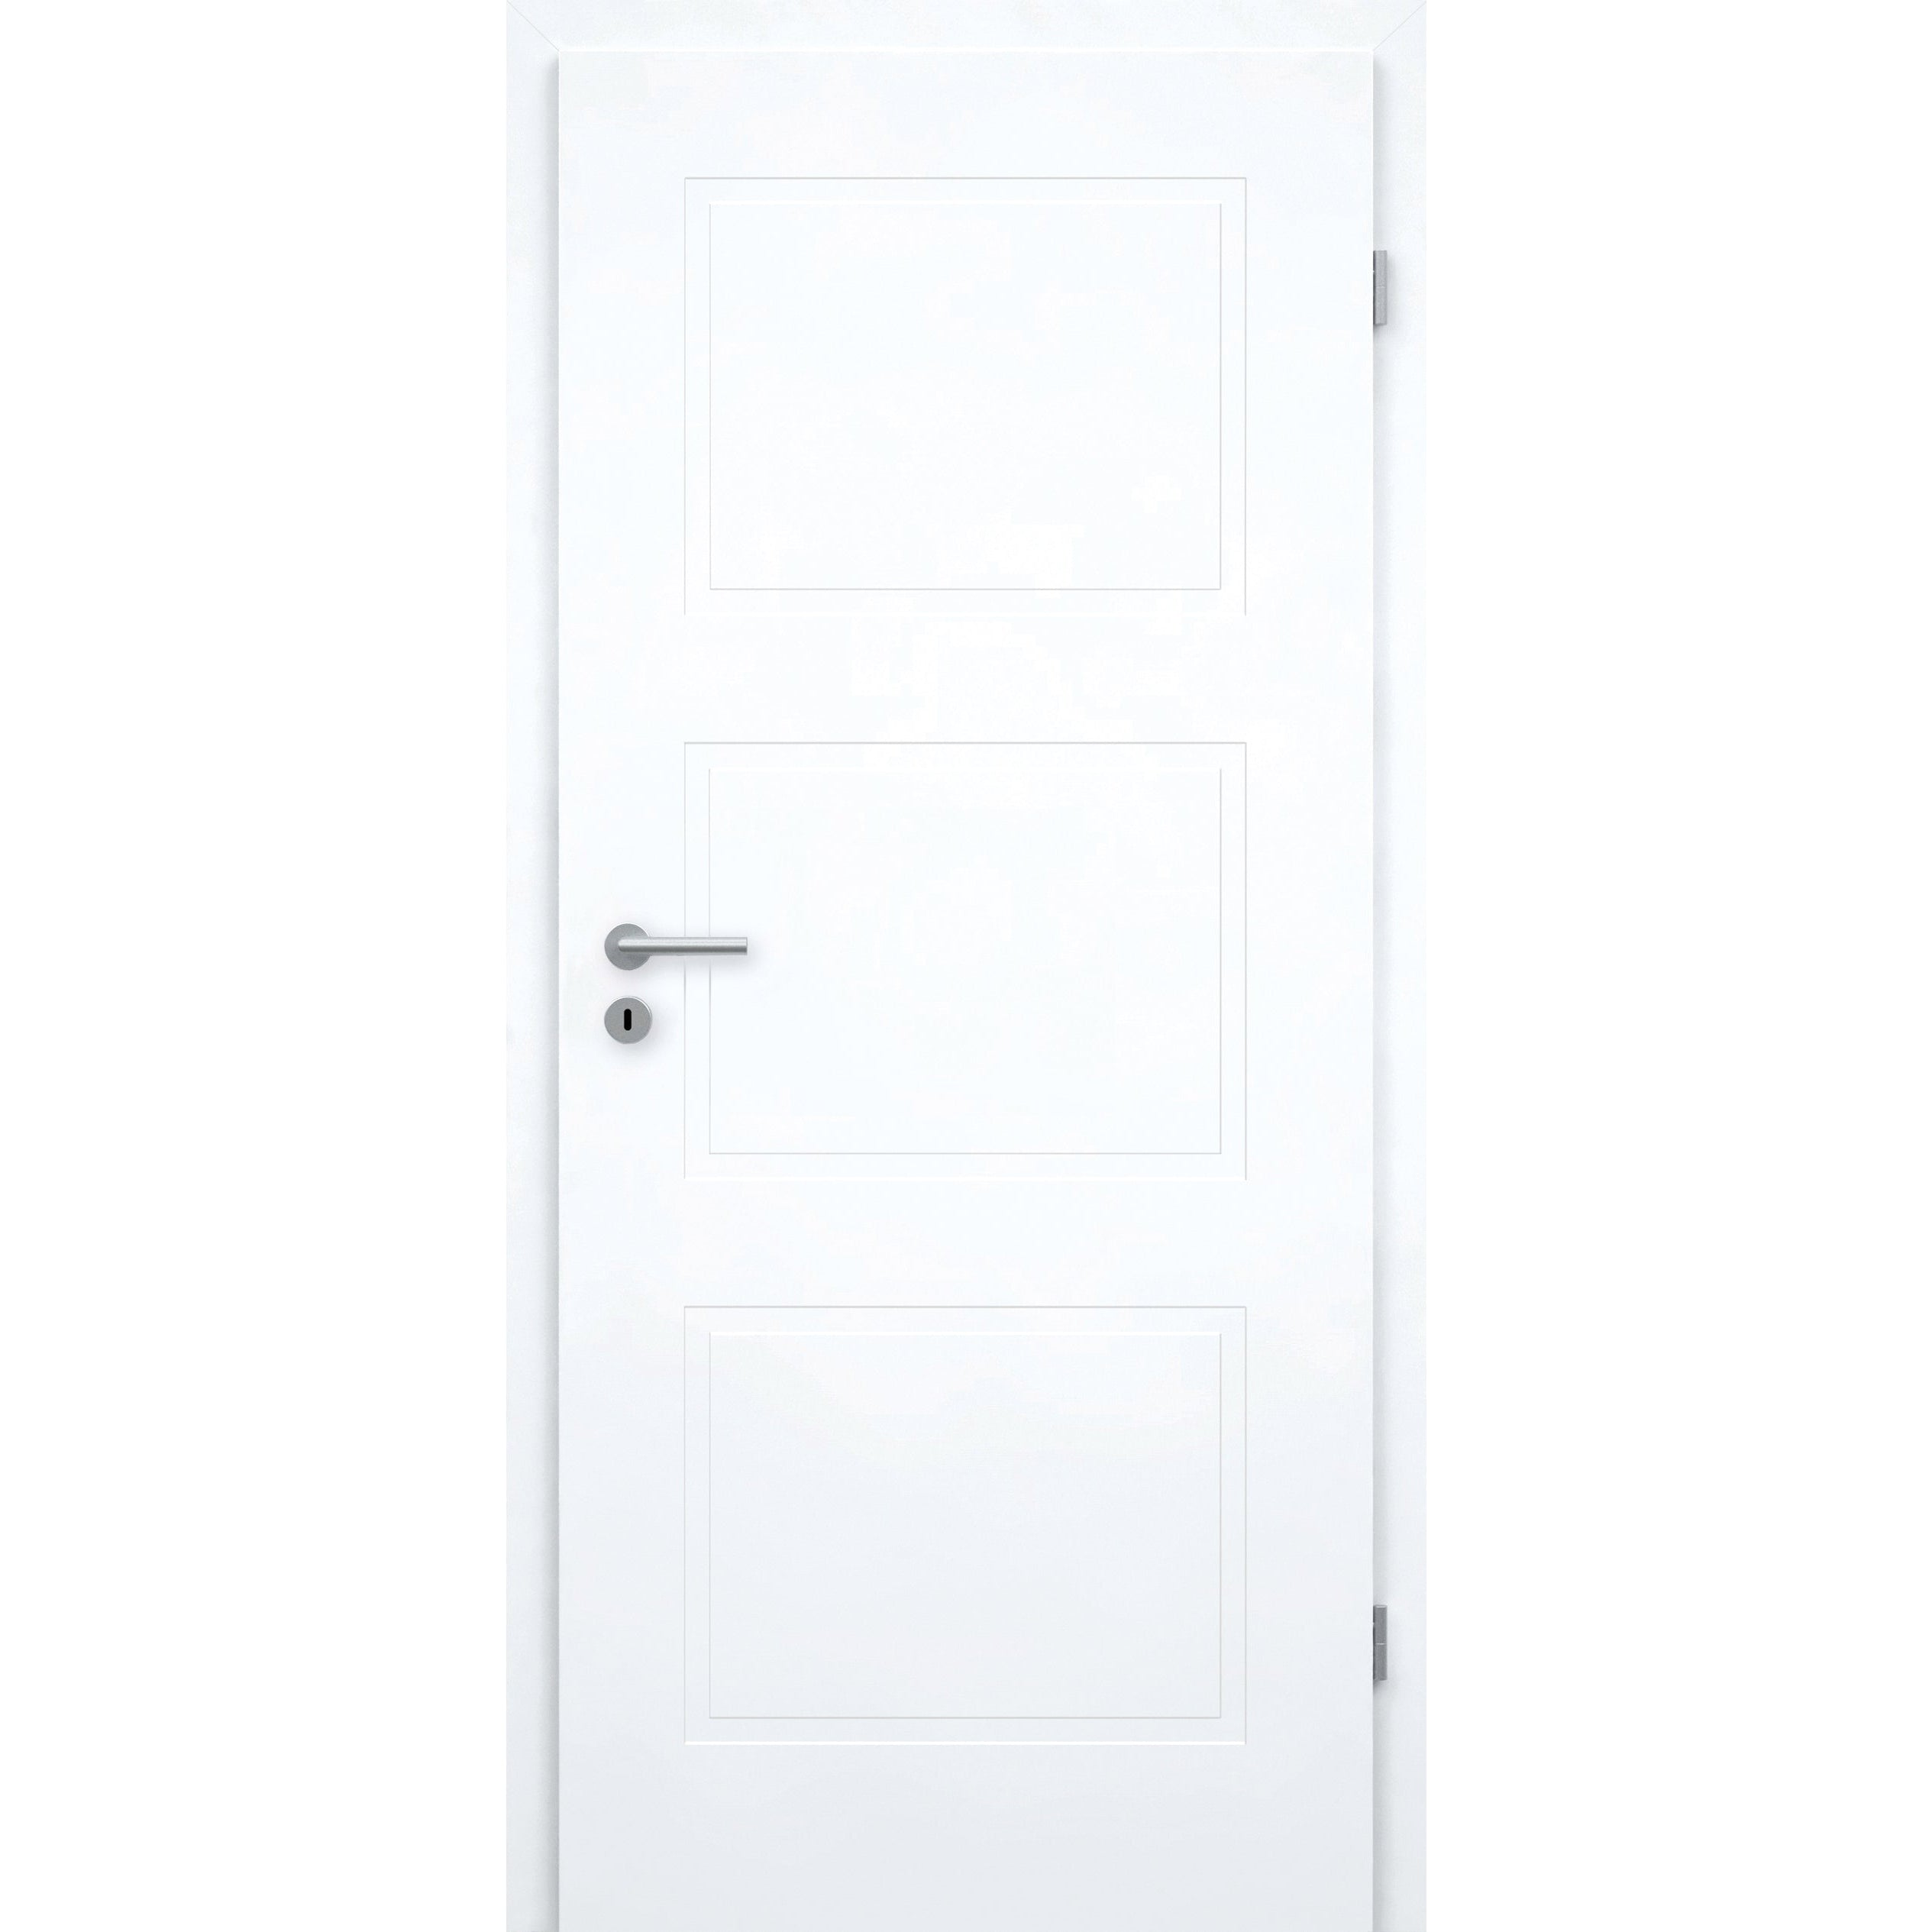 Zimmertür mit Zarge brillant-weiß Stiltür mit 3 Kassetten Designkante - Modell Stiltür M33